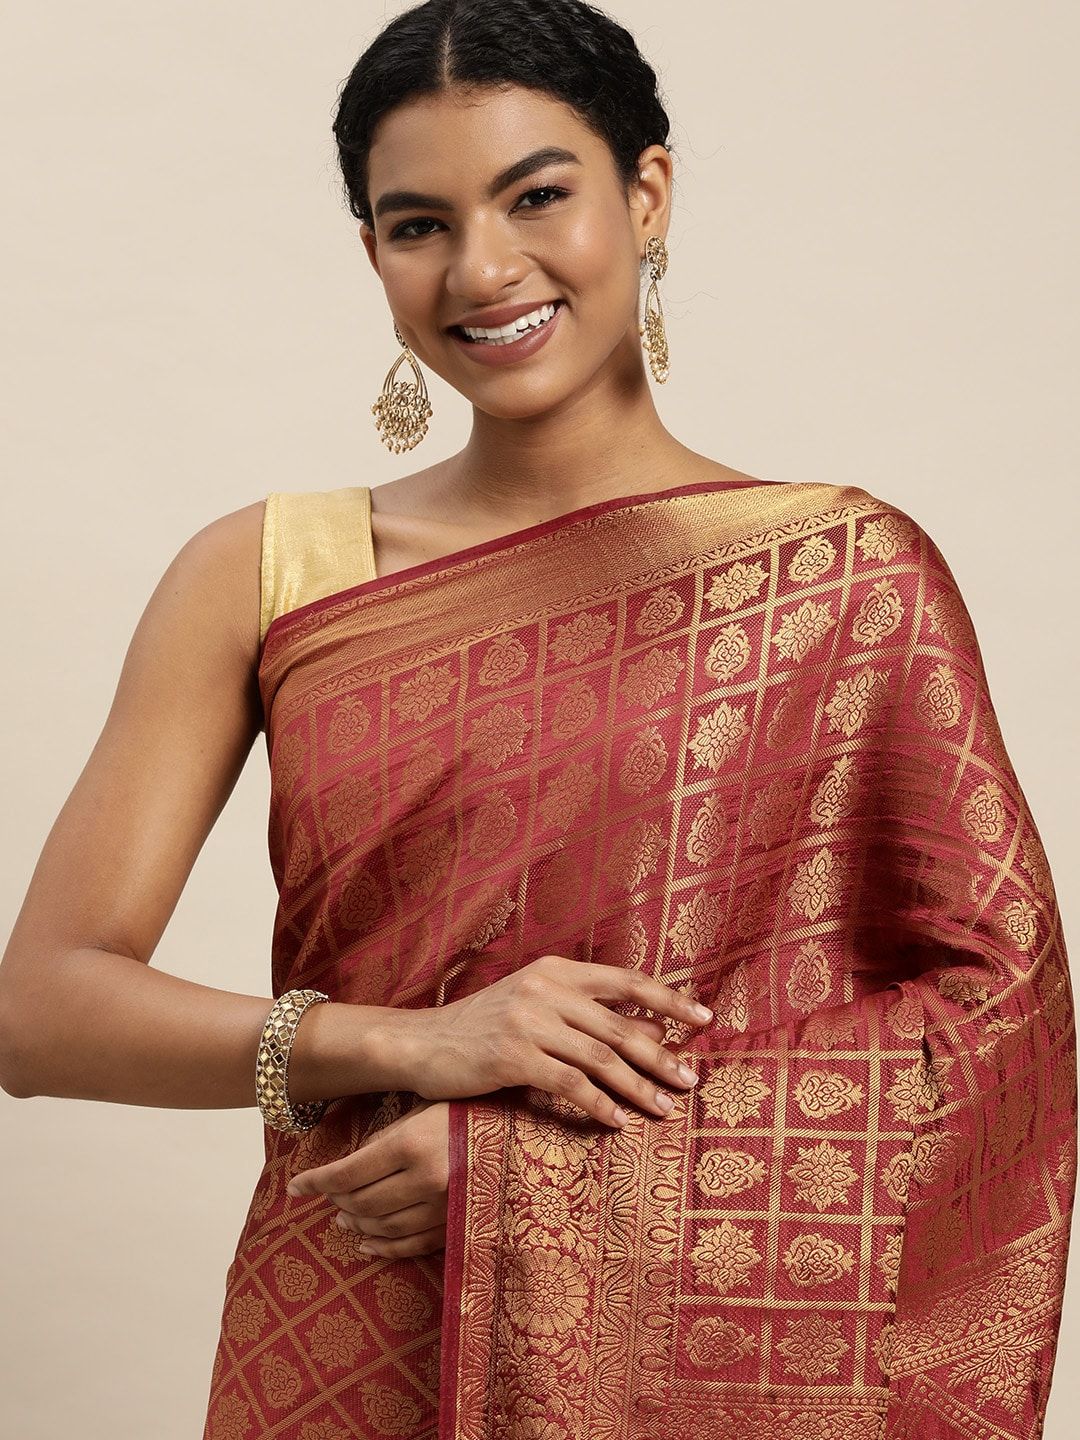 VAIRAGEE Maroon & Golden Woven Design Pure Silk Kanjeevaram Saree Price in India